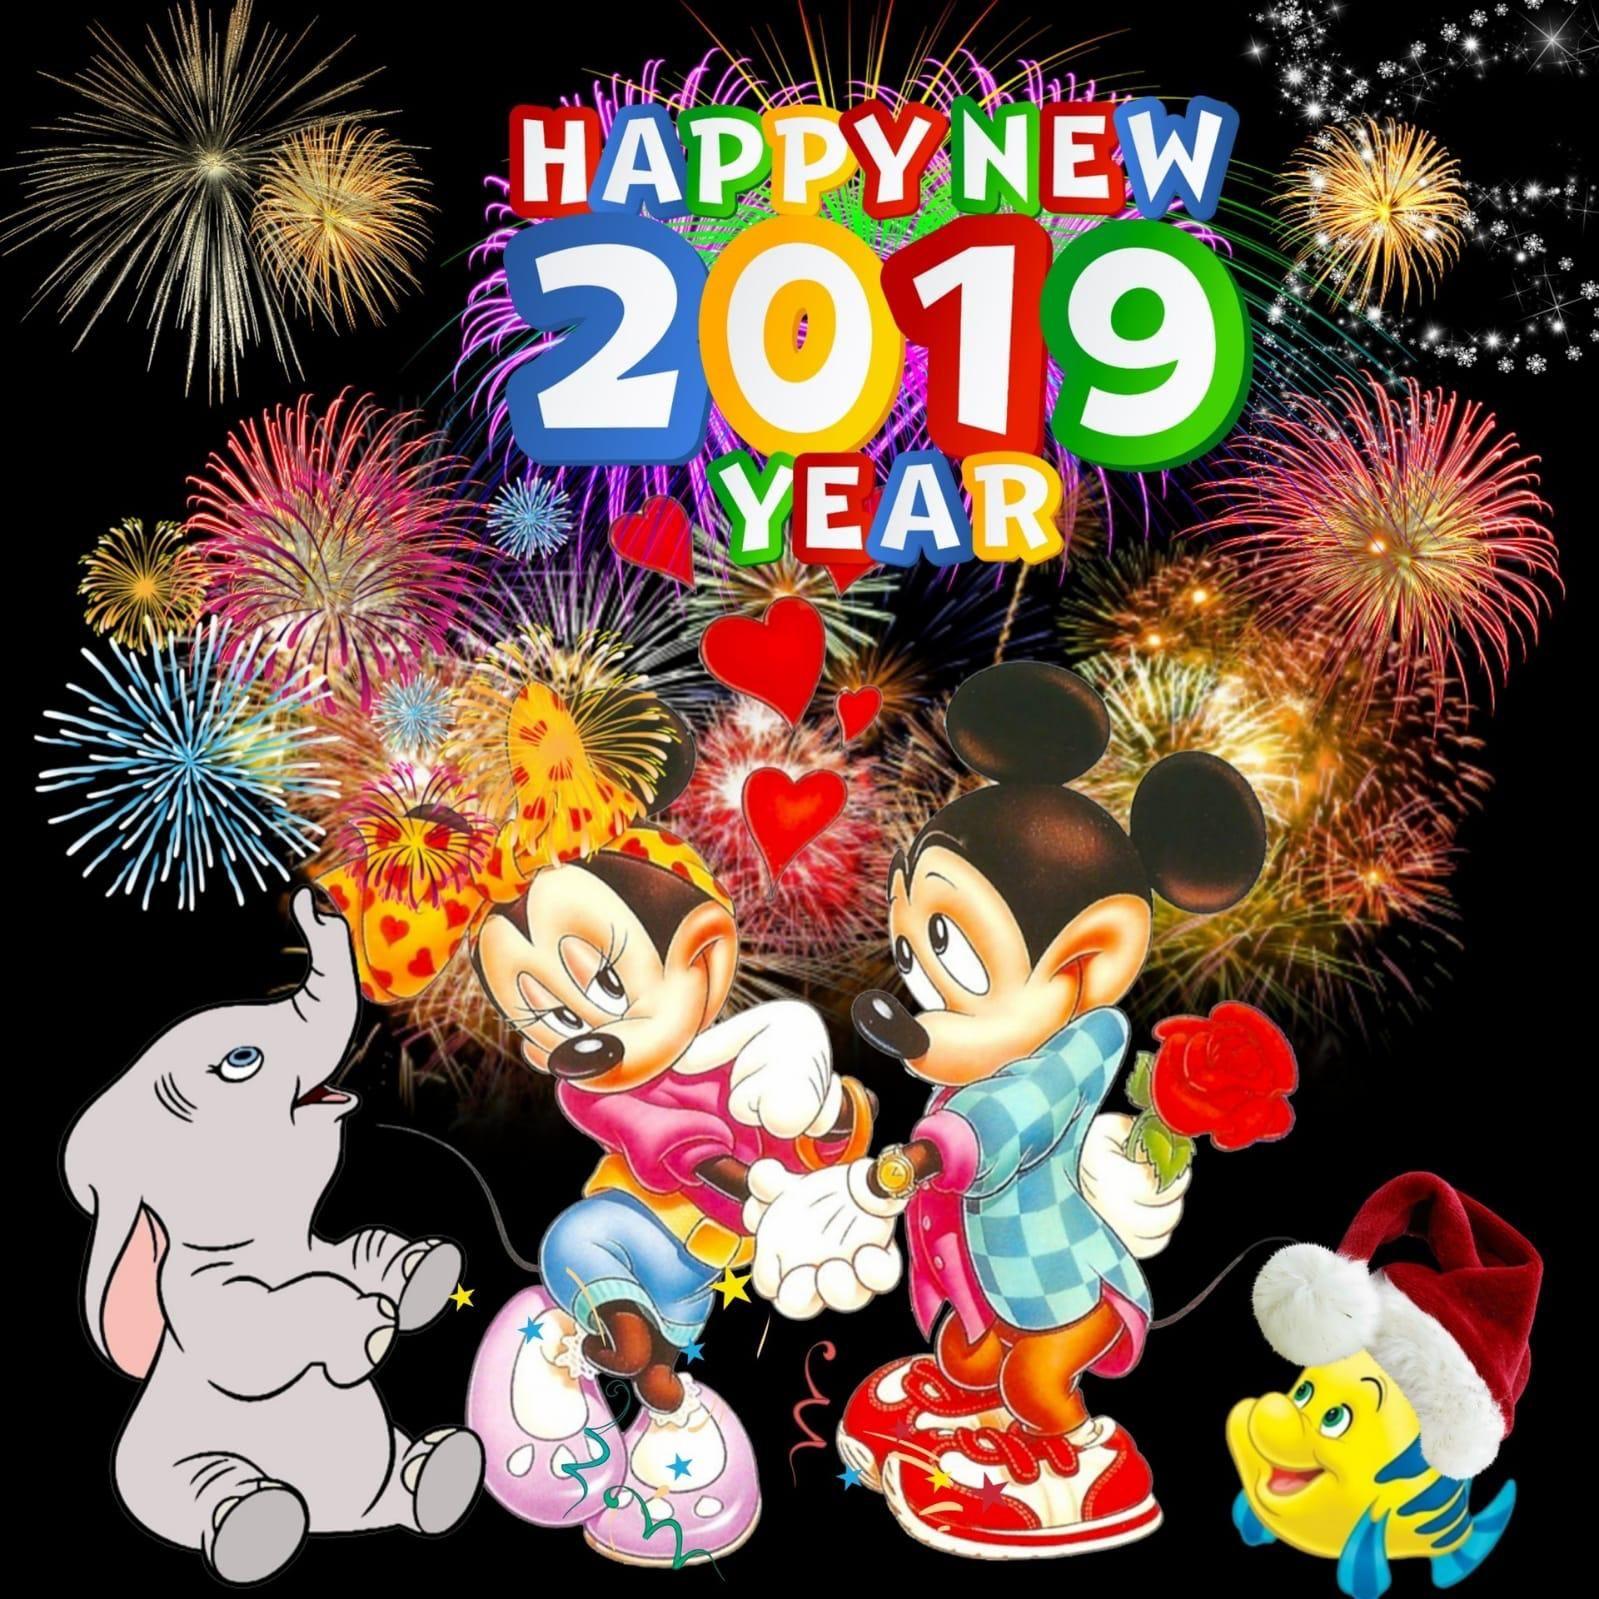 1599x1599 Disney Happy New Year ideas in 2021. disney happy new year, happy new year, happy new